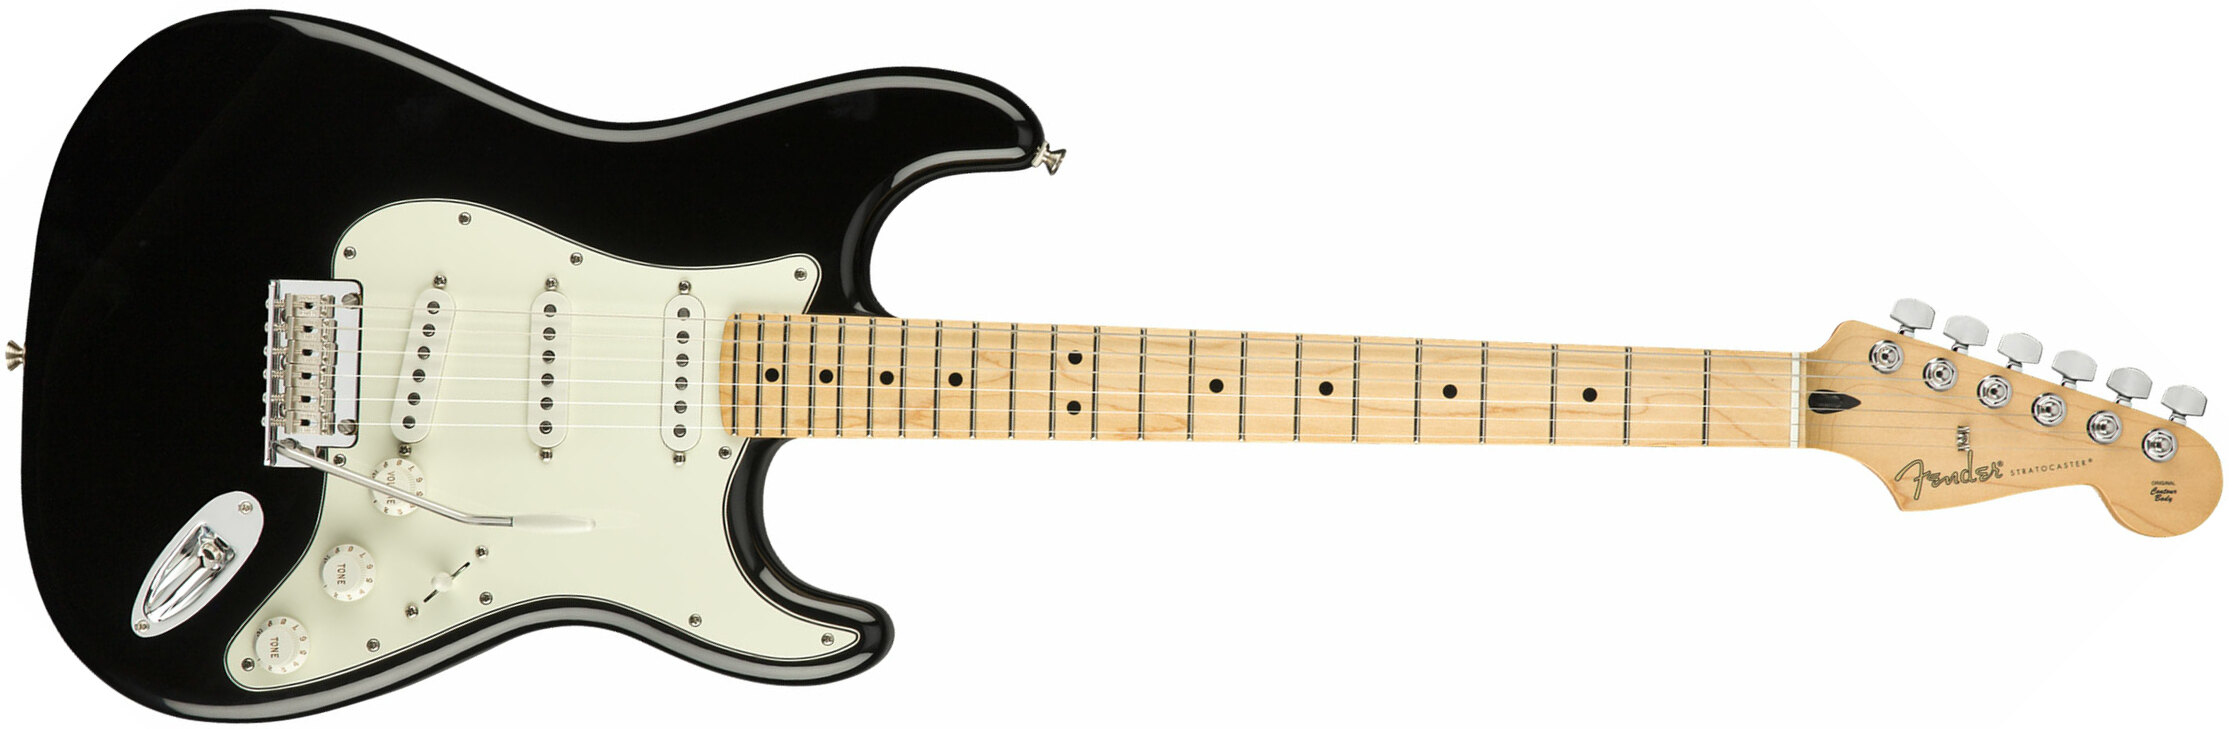 Fender Strat Player Mex Sss Mn - Black - Elektrische gitaar in Str-vorm - Main picture